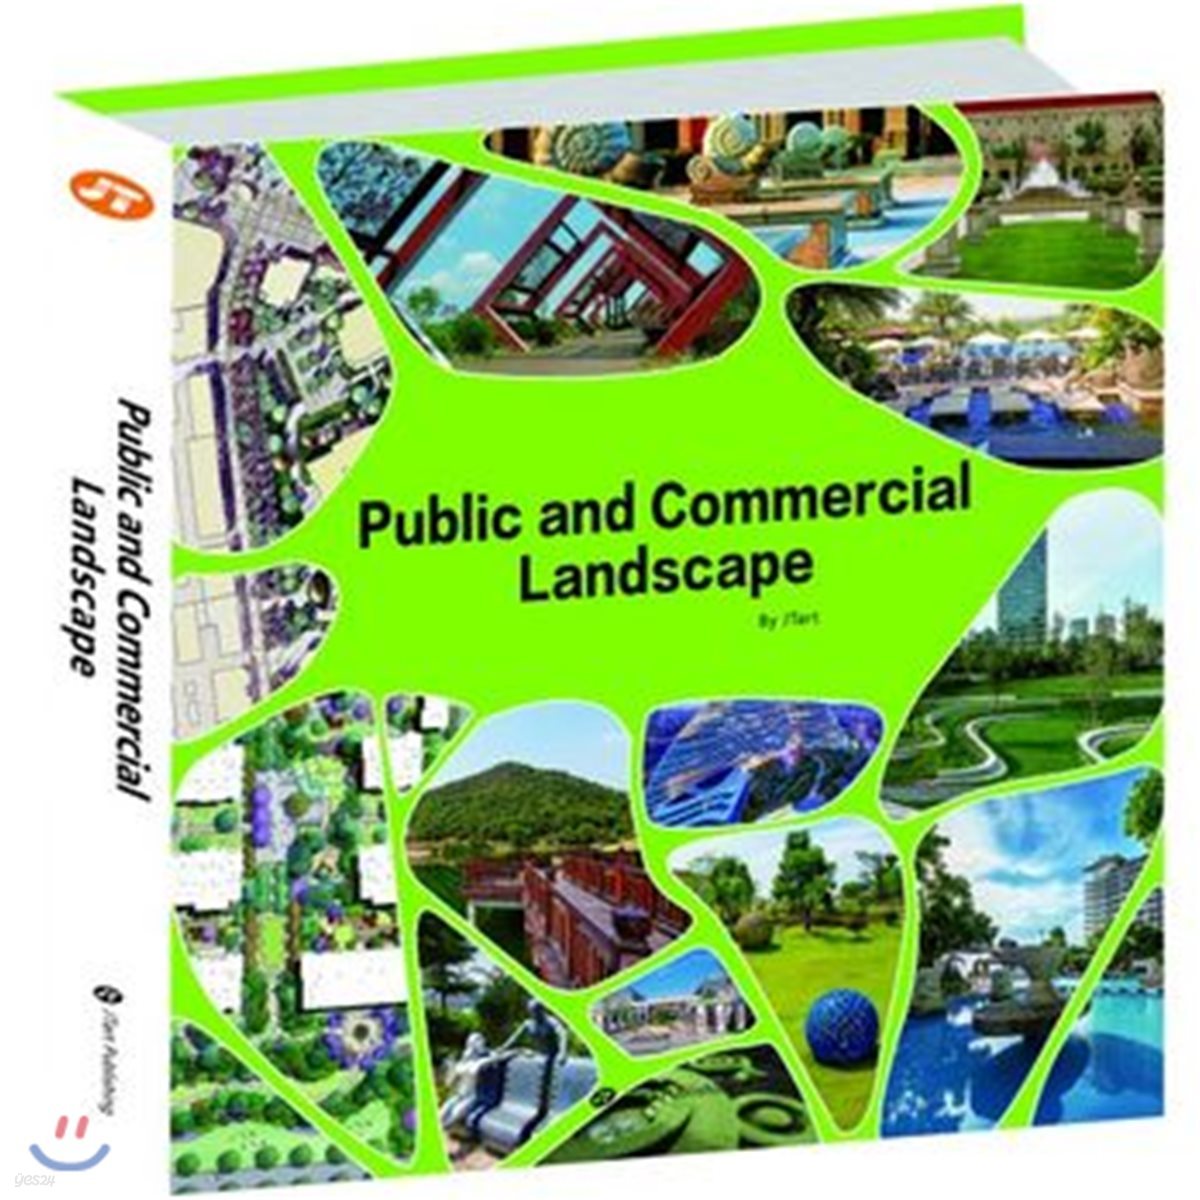 Public and Commercial Landscape